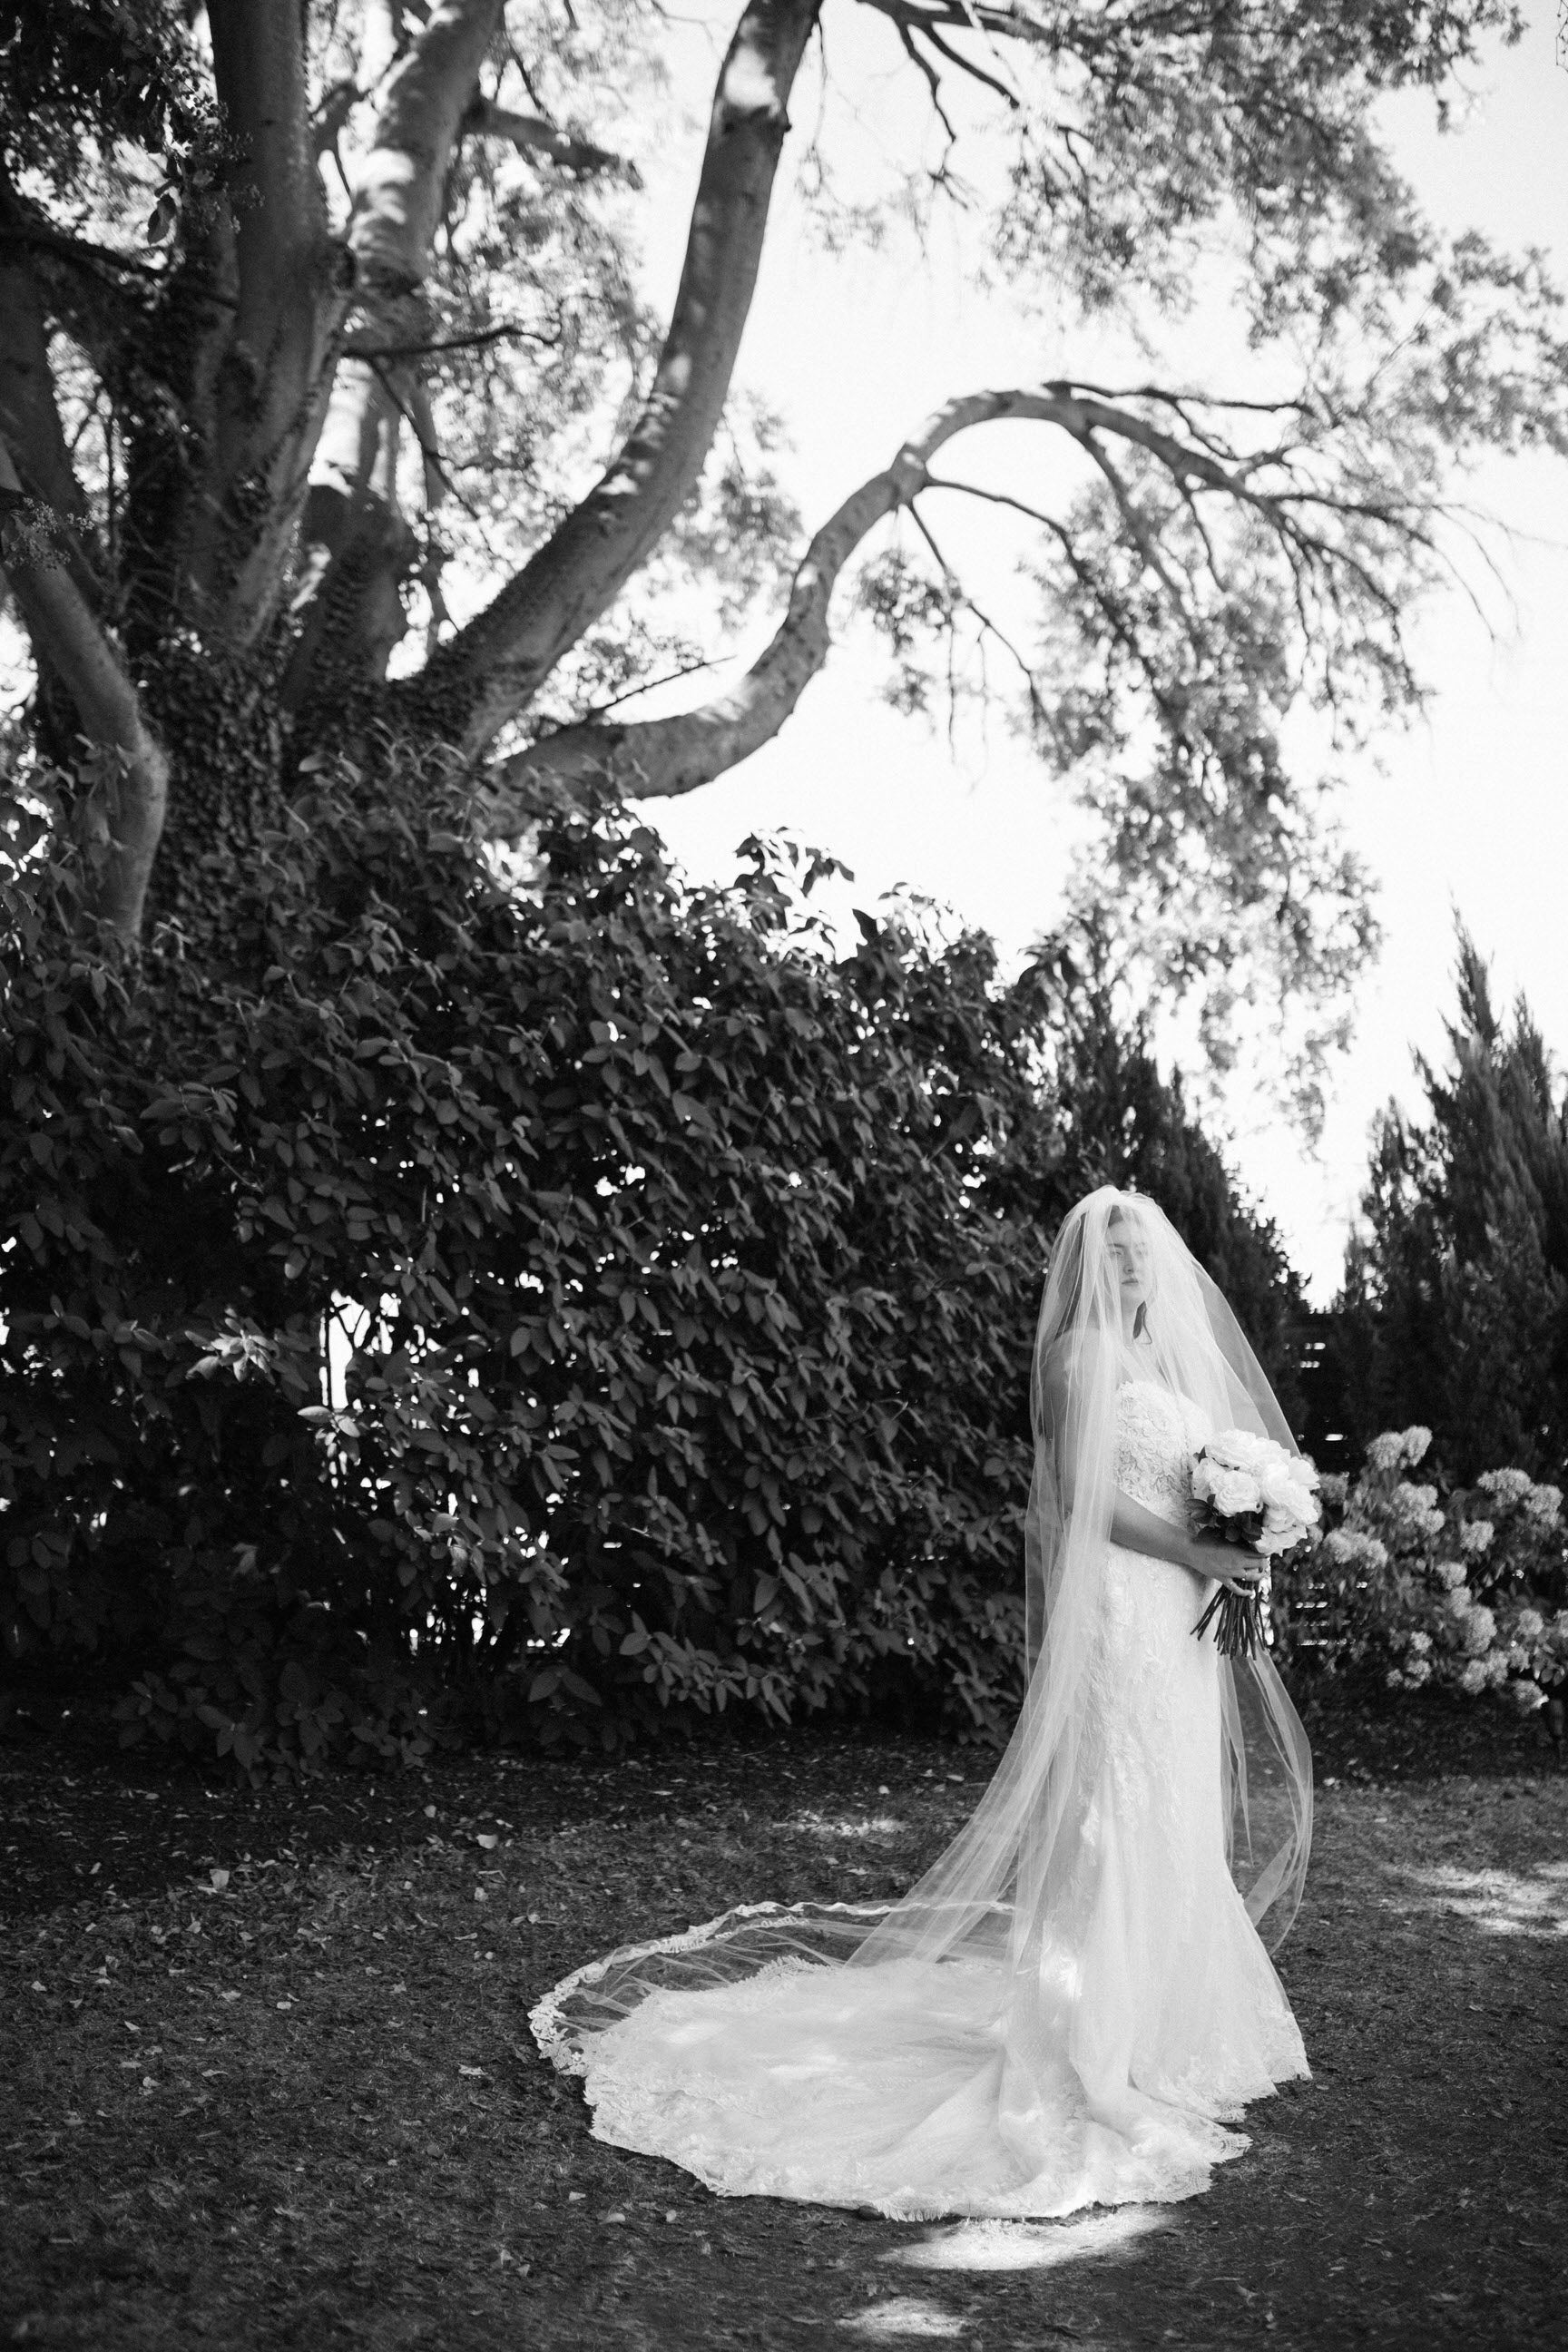 One Blushing Bride Lace Waltz Length Wedding Veil, White / Off White / Ivory Bridal Veil Light Ivory / Waltz 45-48 inch / No Beading